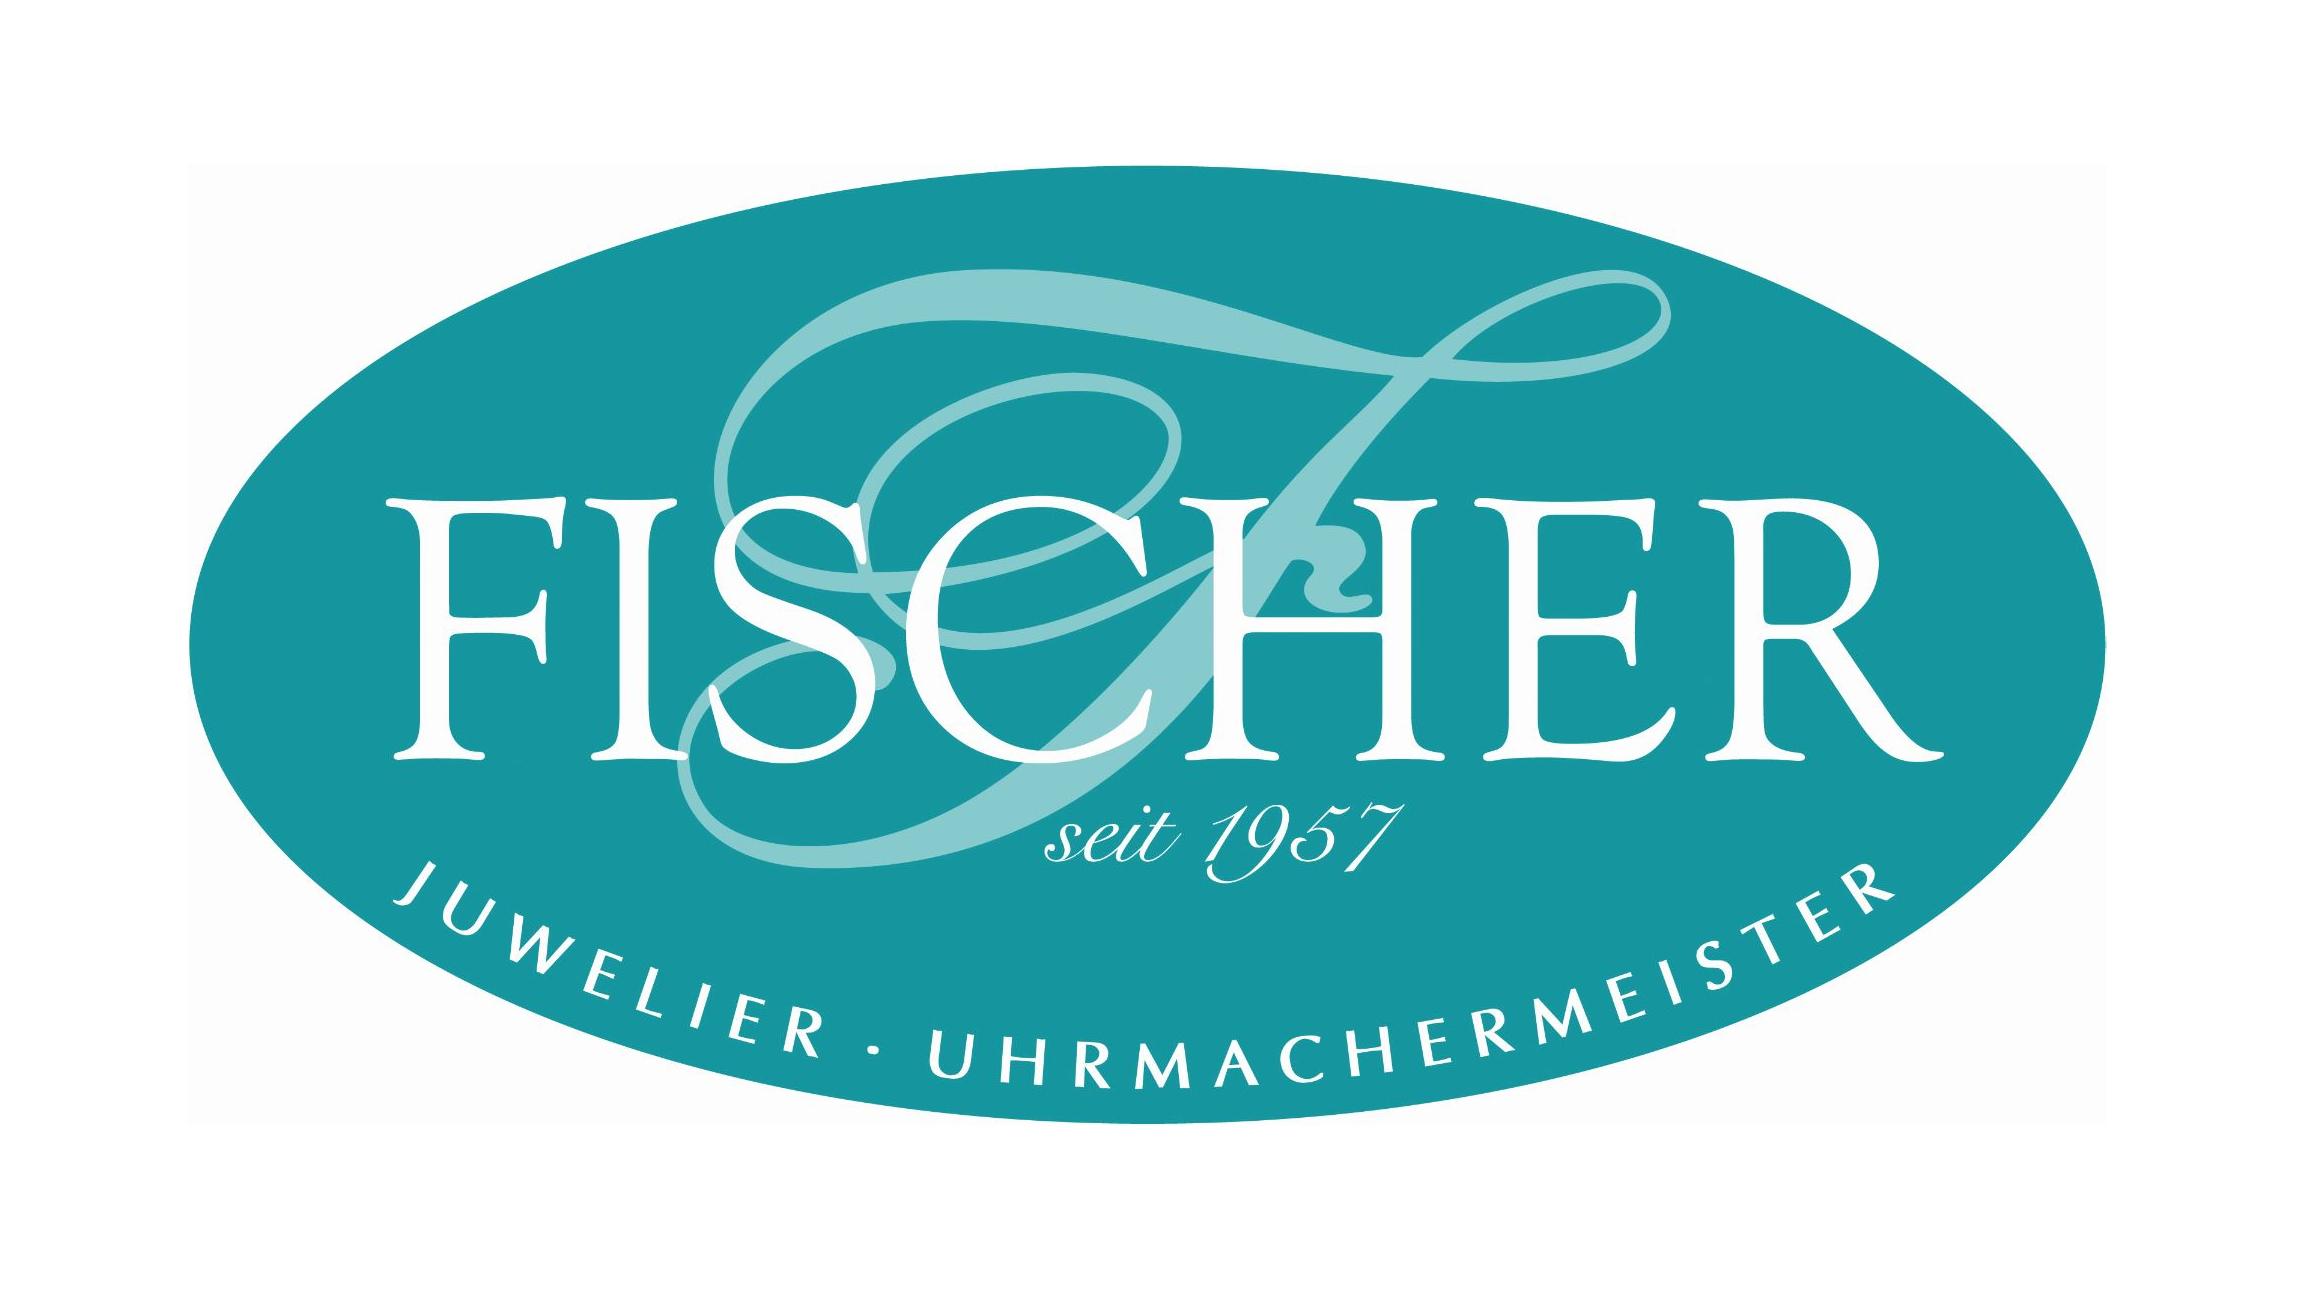 Uhren Fischer, Inh. Ulf Biewald e.K.